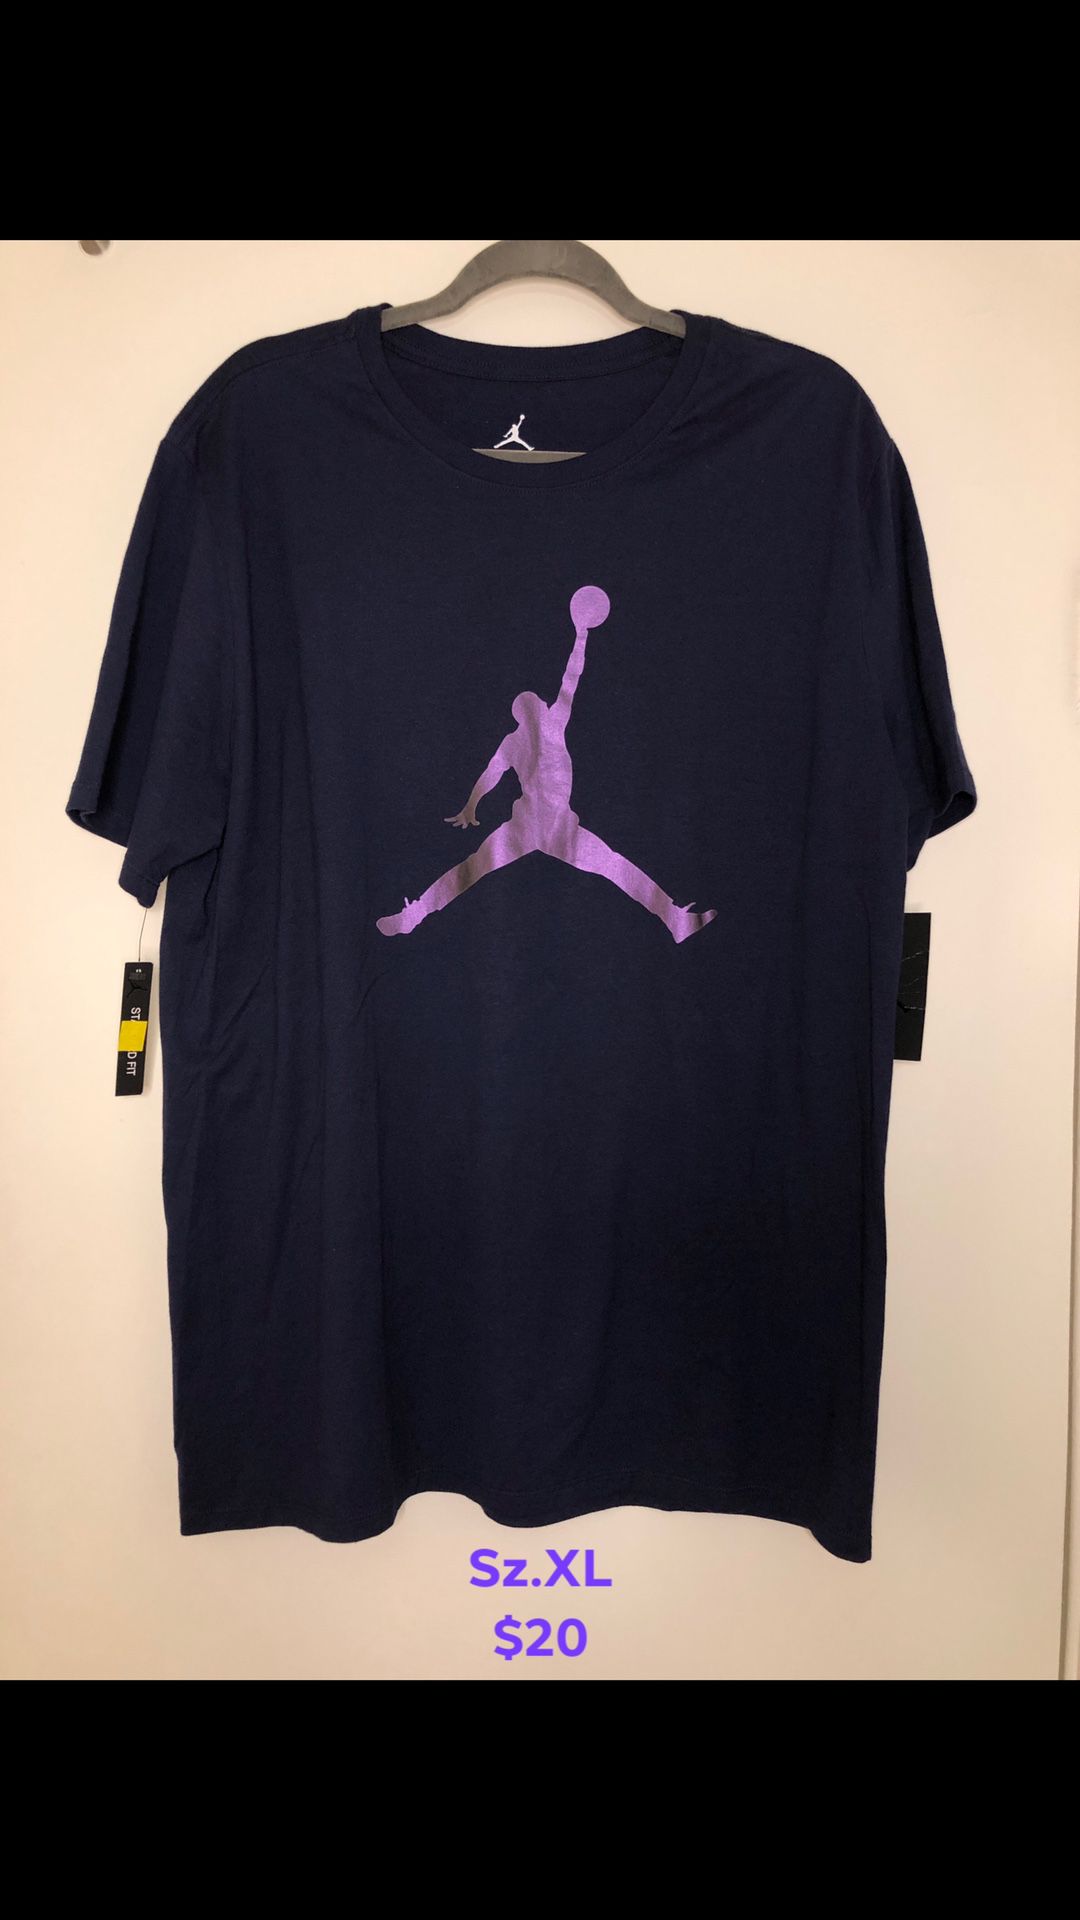 Jordan Nike retro shirts (sz.XL)